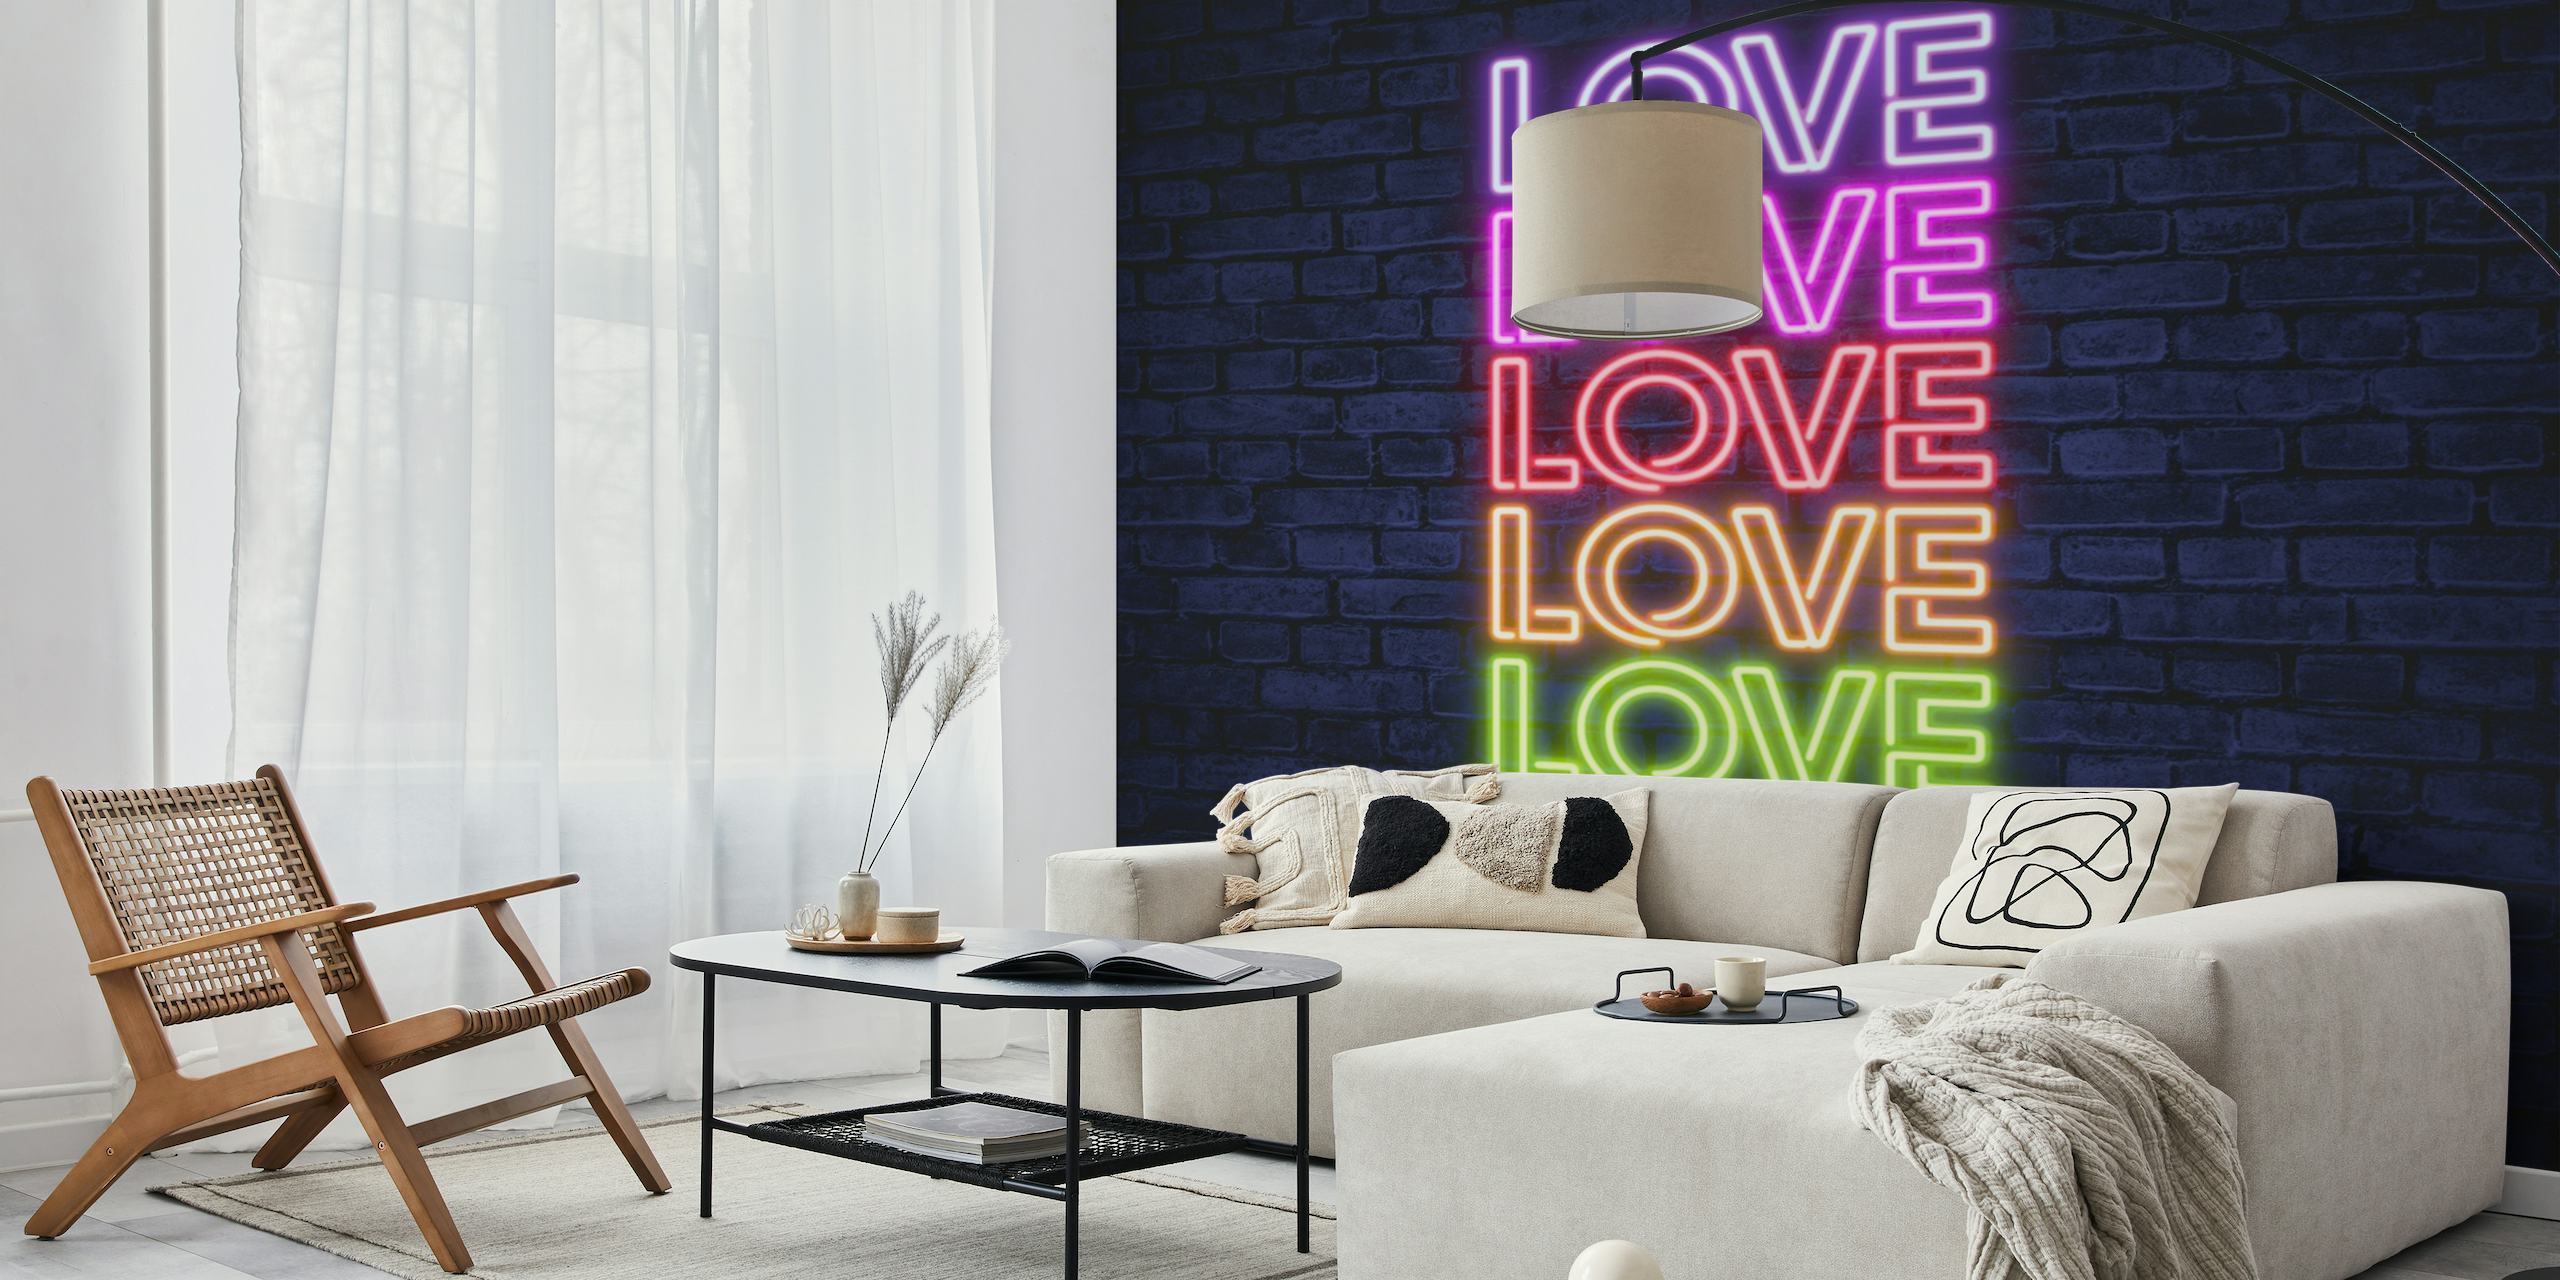 Neon kærlighed typografi i pink, blå og gul på en murstensvæg baggrundsvægmaleri